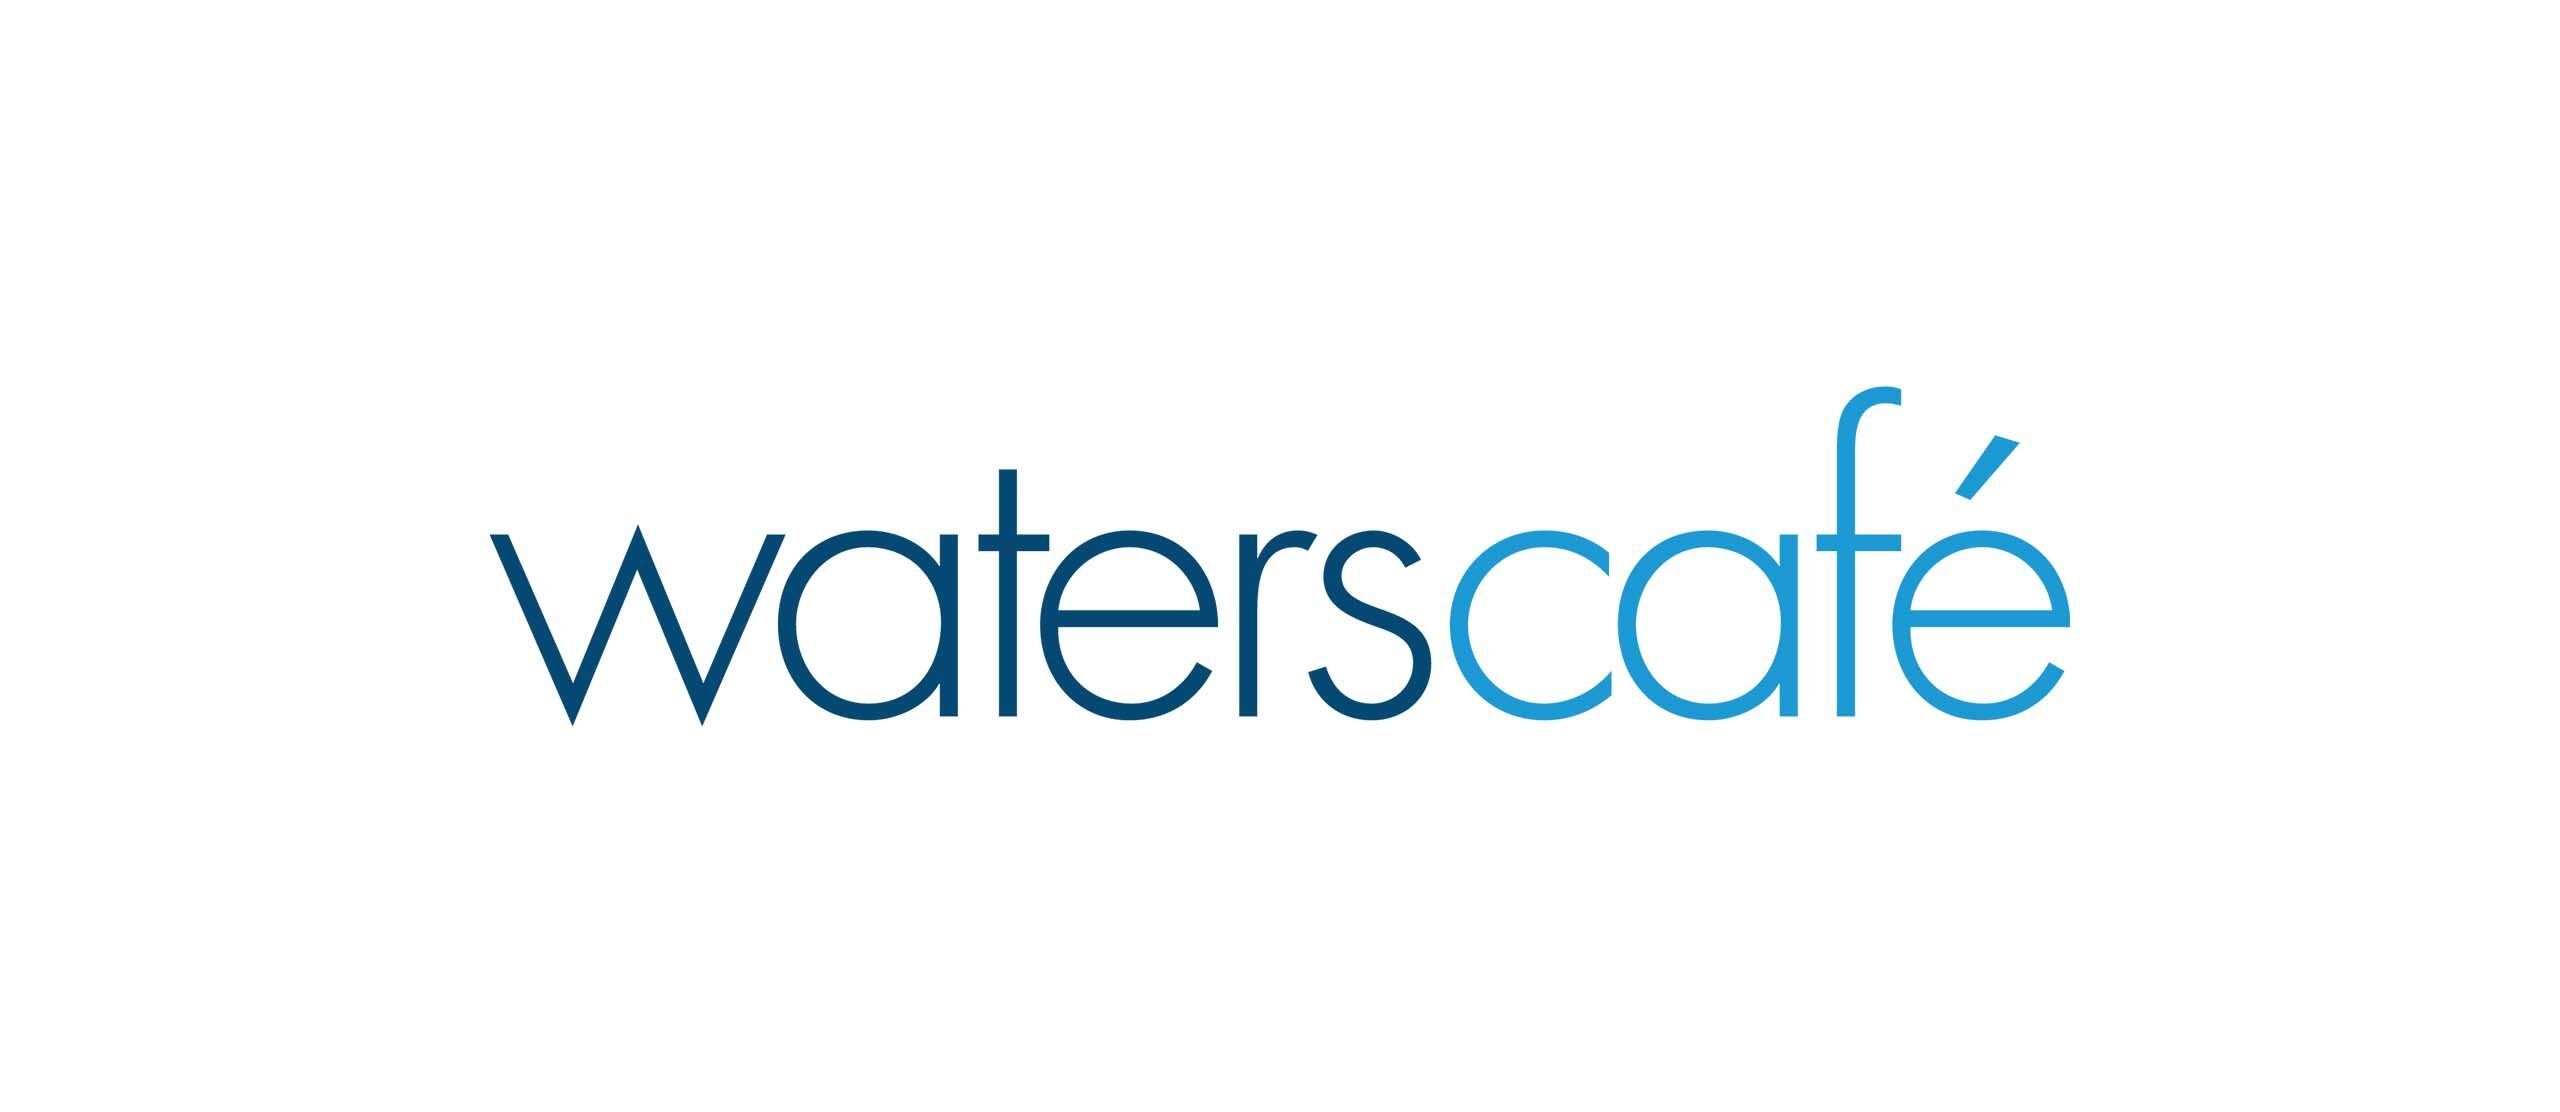 Waters Café Specials